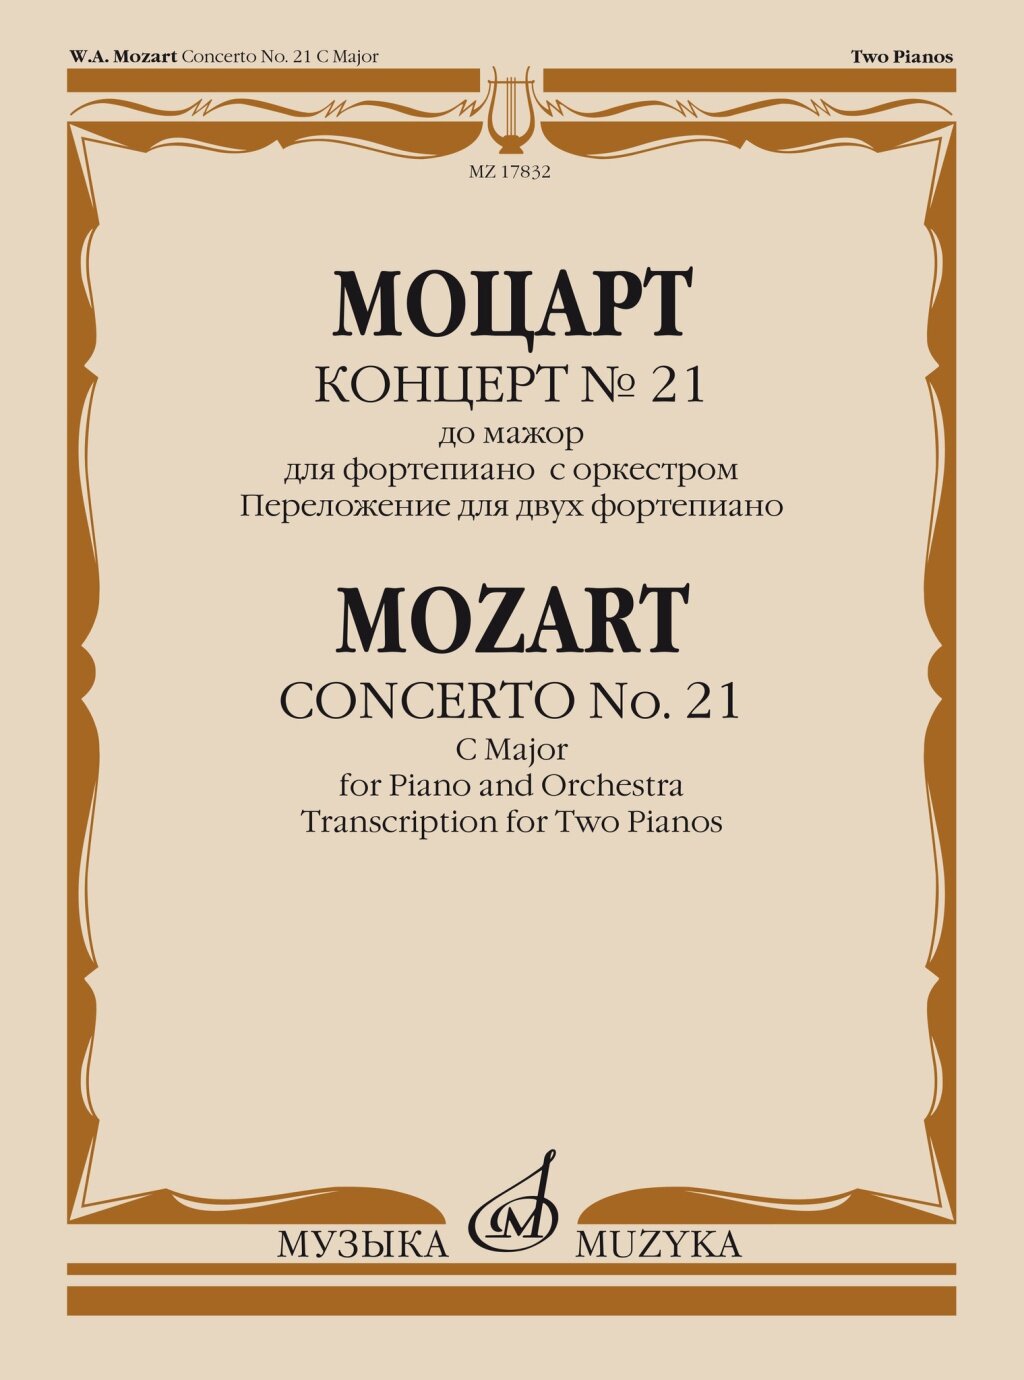 17832МИ Моцарт В. А. Концерт No21 До мажор. Переложение для 2 фортепиано, издательство "Музыка"